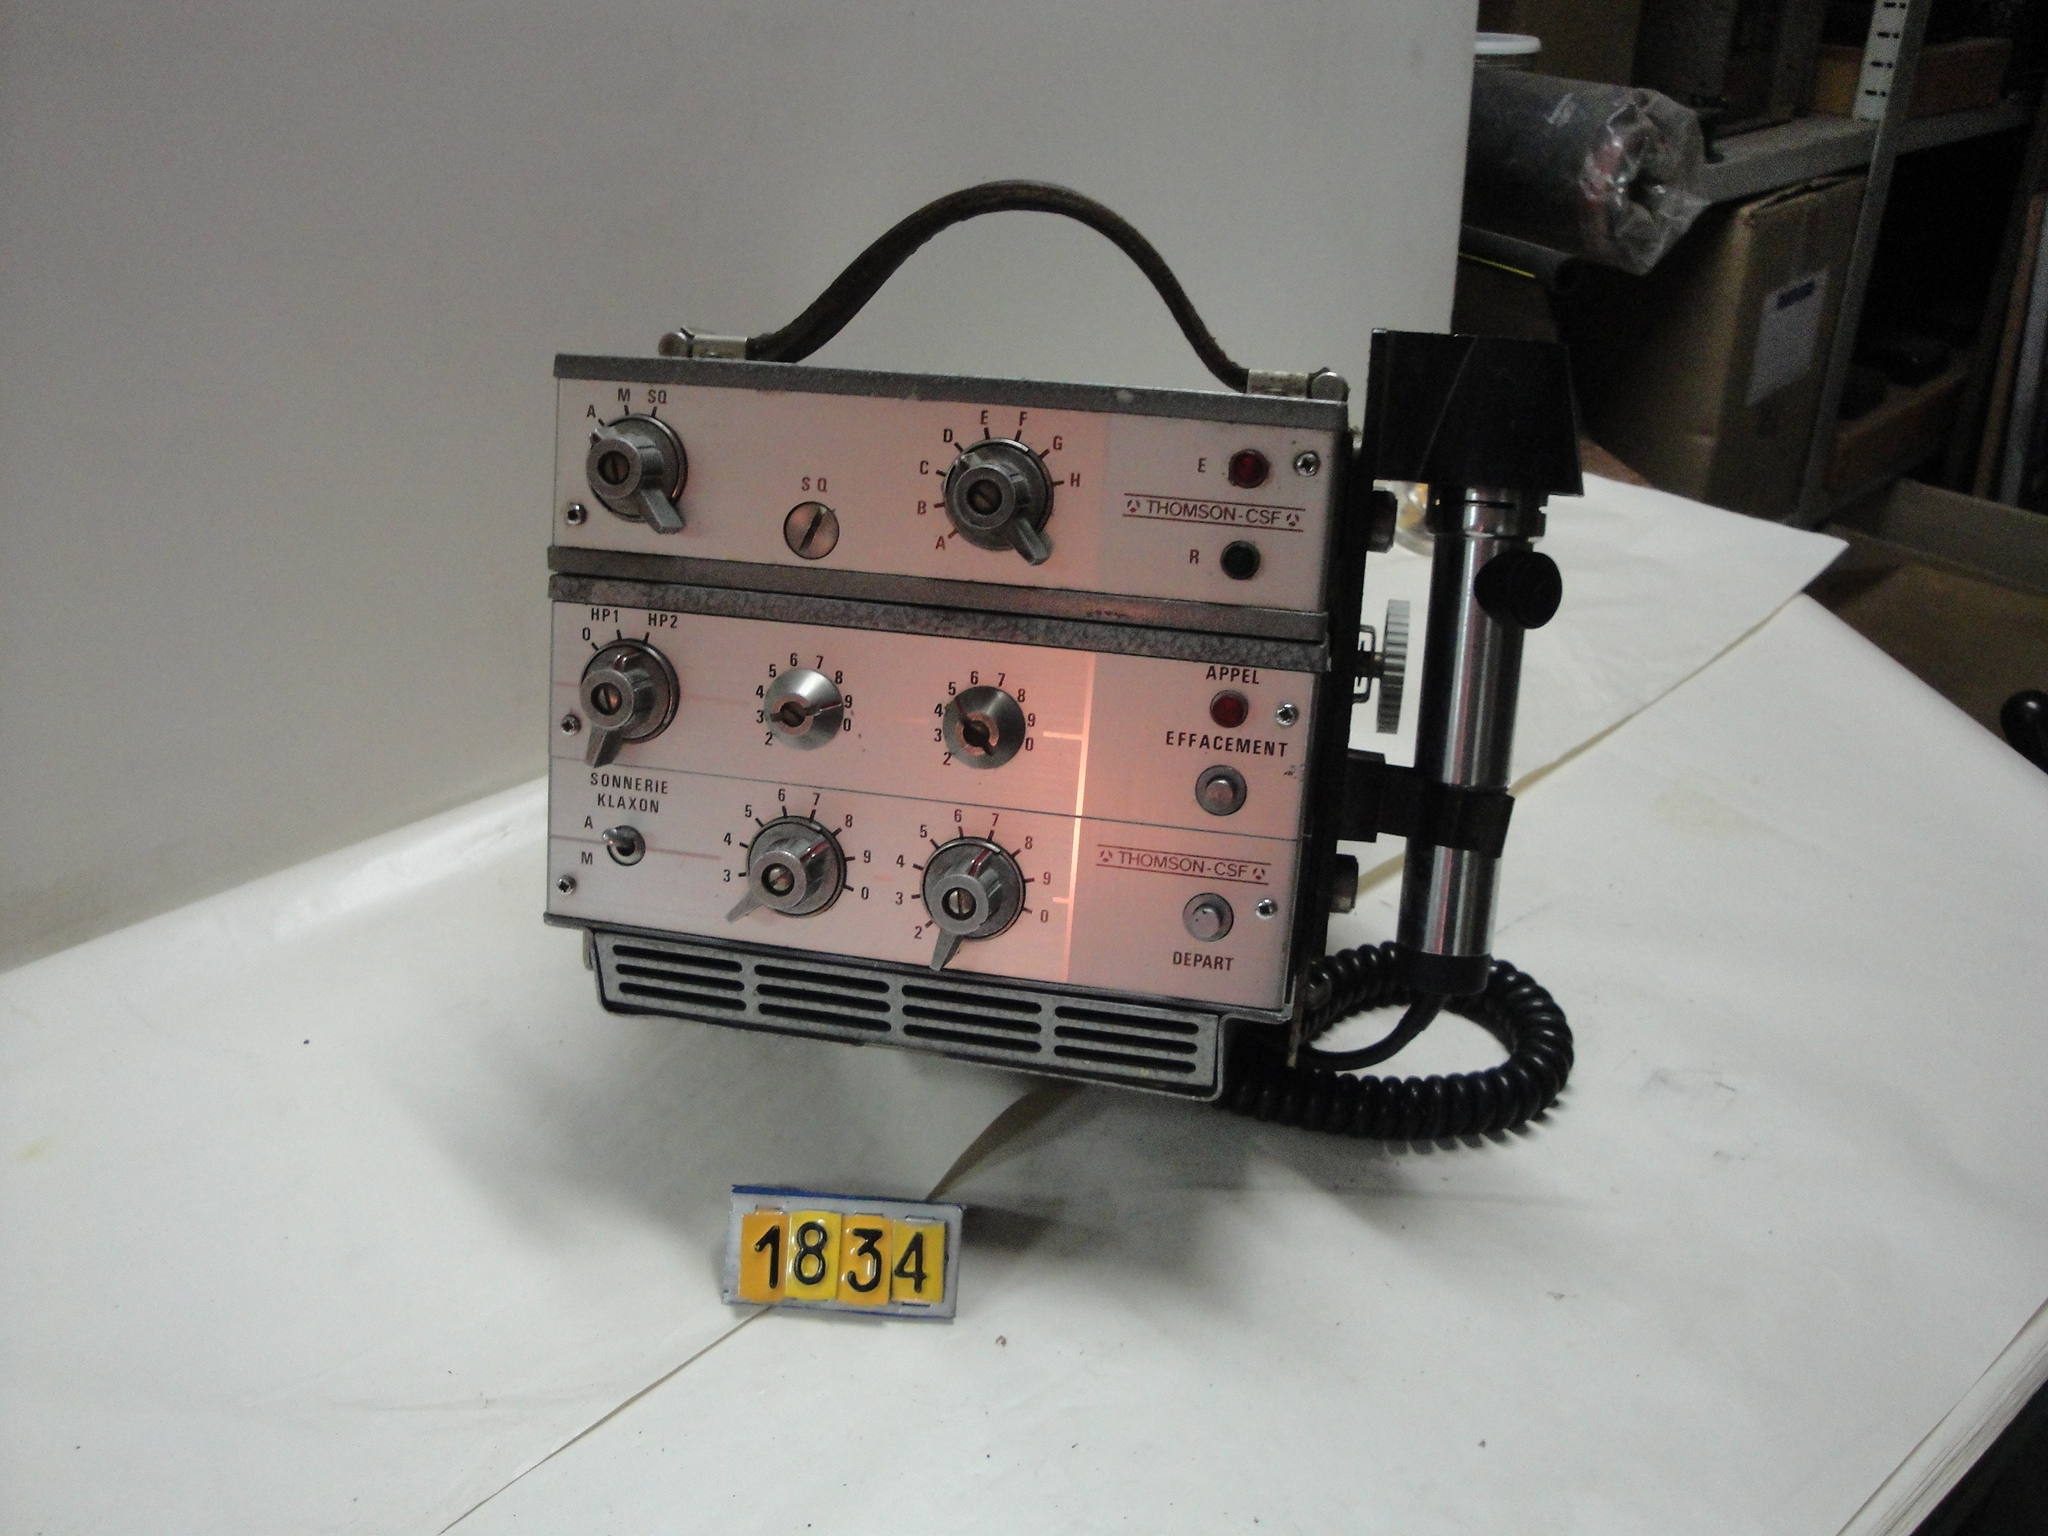  Collection ASPEG, pièce numéro 1834 : Radio portable CSM